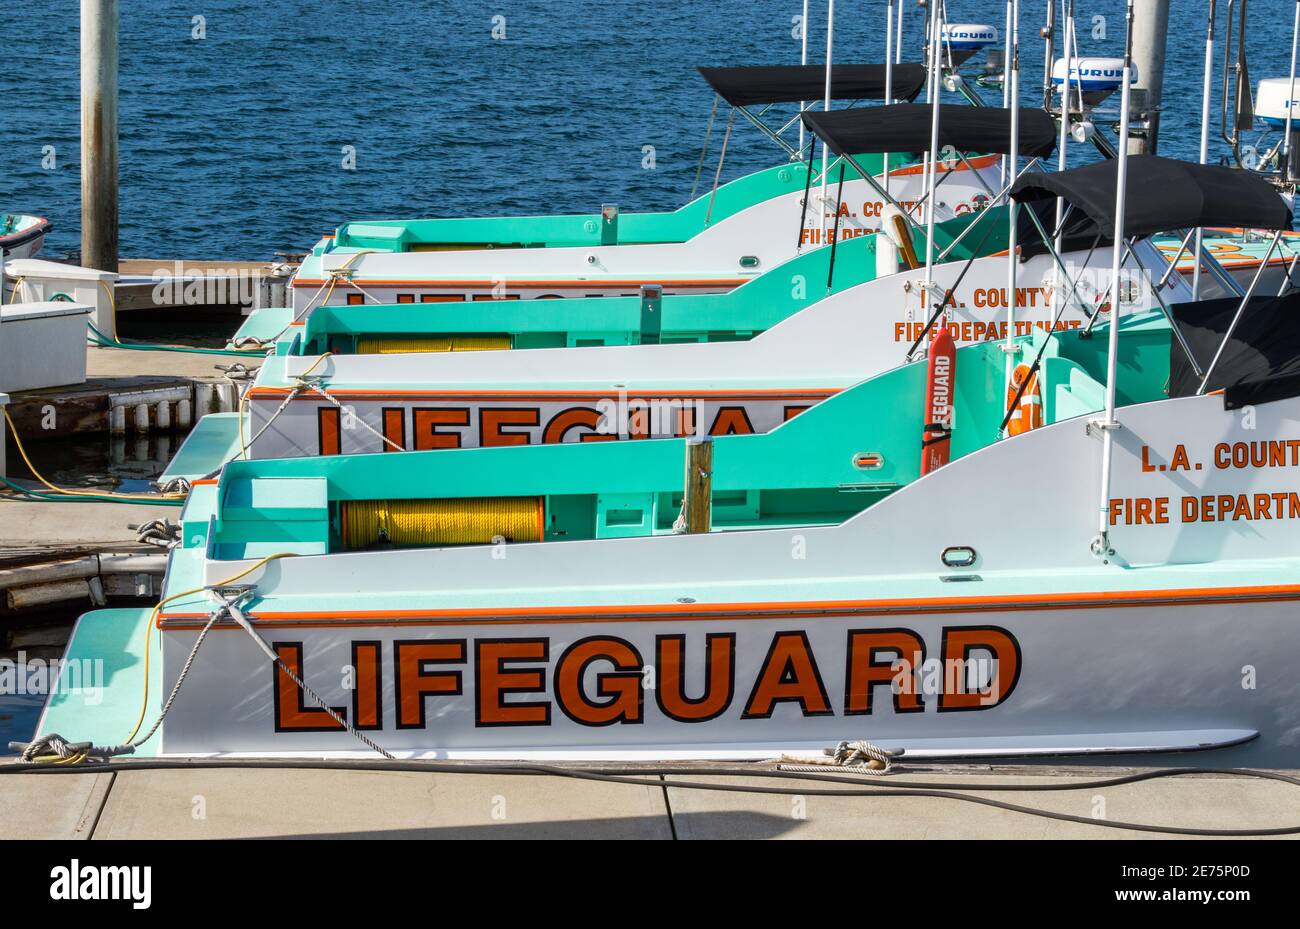 Three Los Angeles County lifeguard boats docked in Marina Del Rey, California, USA Stock Photo